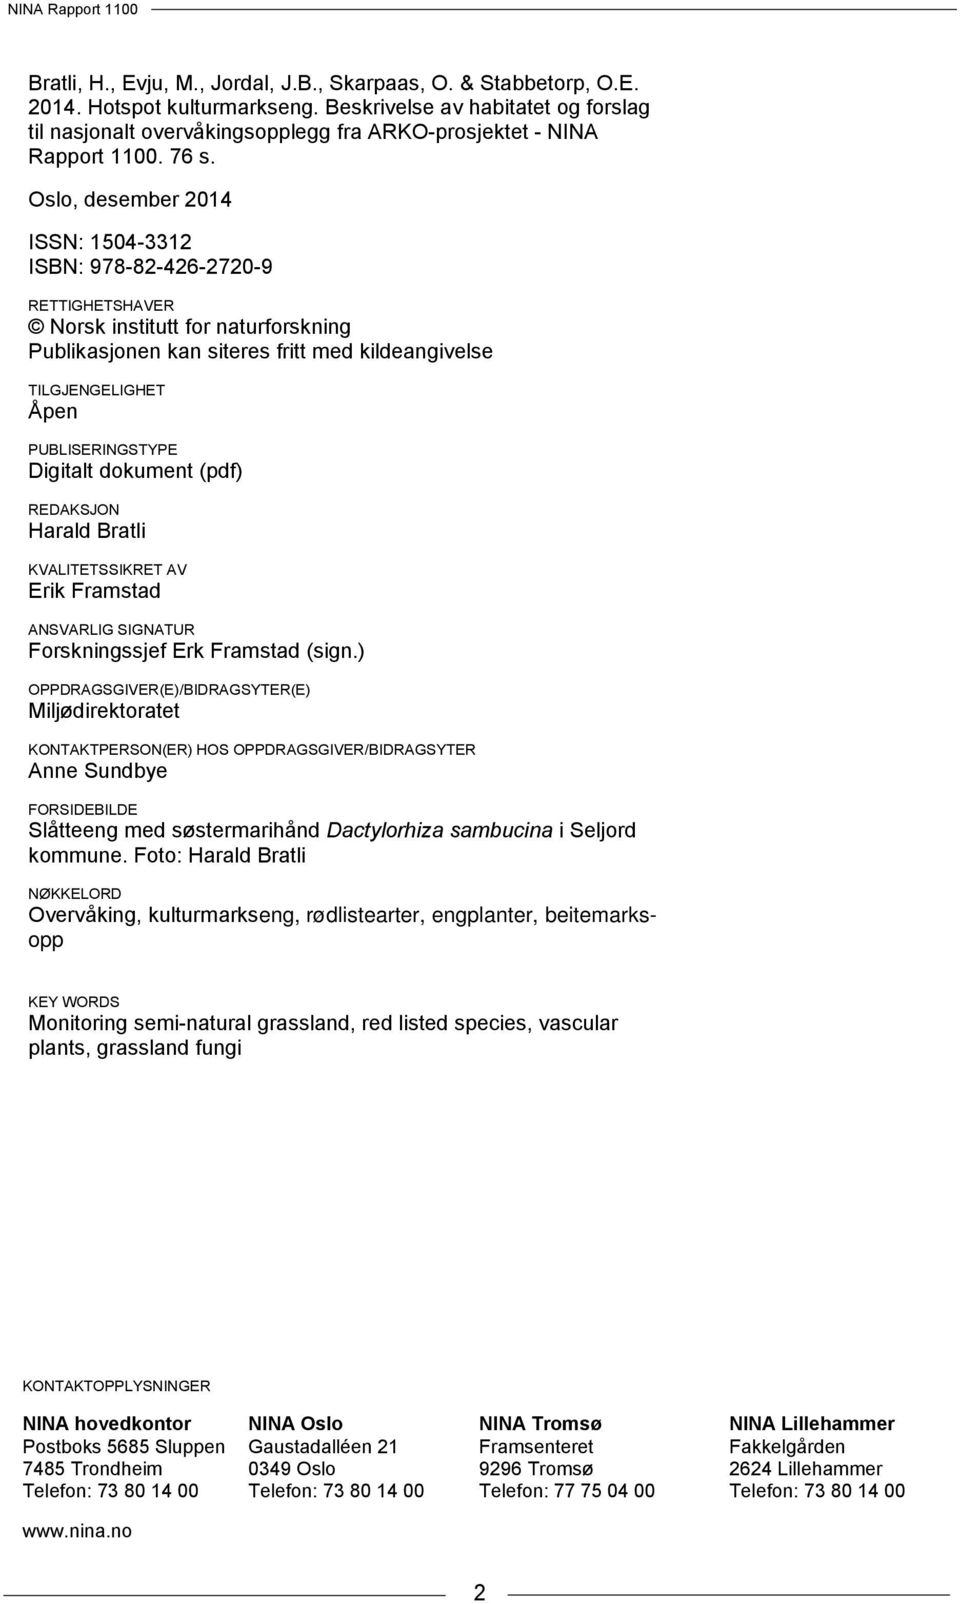 Oslo, desember 2014 ISSN: 1504-3312 ISBN: 978-82-426-2720-9 RETTIGHETSHAVER Norsk institutt for naturforskning Publikasjonen kan siteres fritt med kildeangivelse TILGJENGELIGHET Åpen PUBLISERINGSTYPE